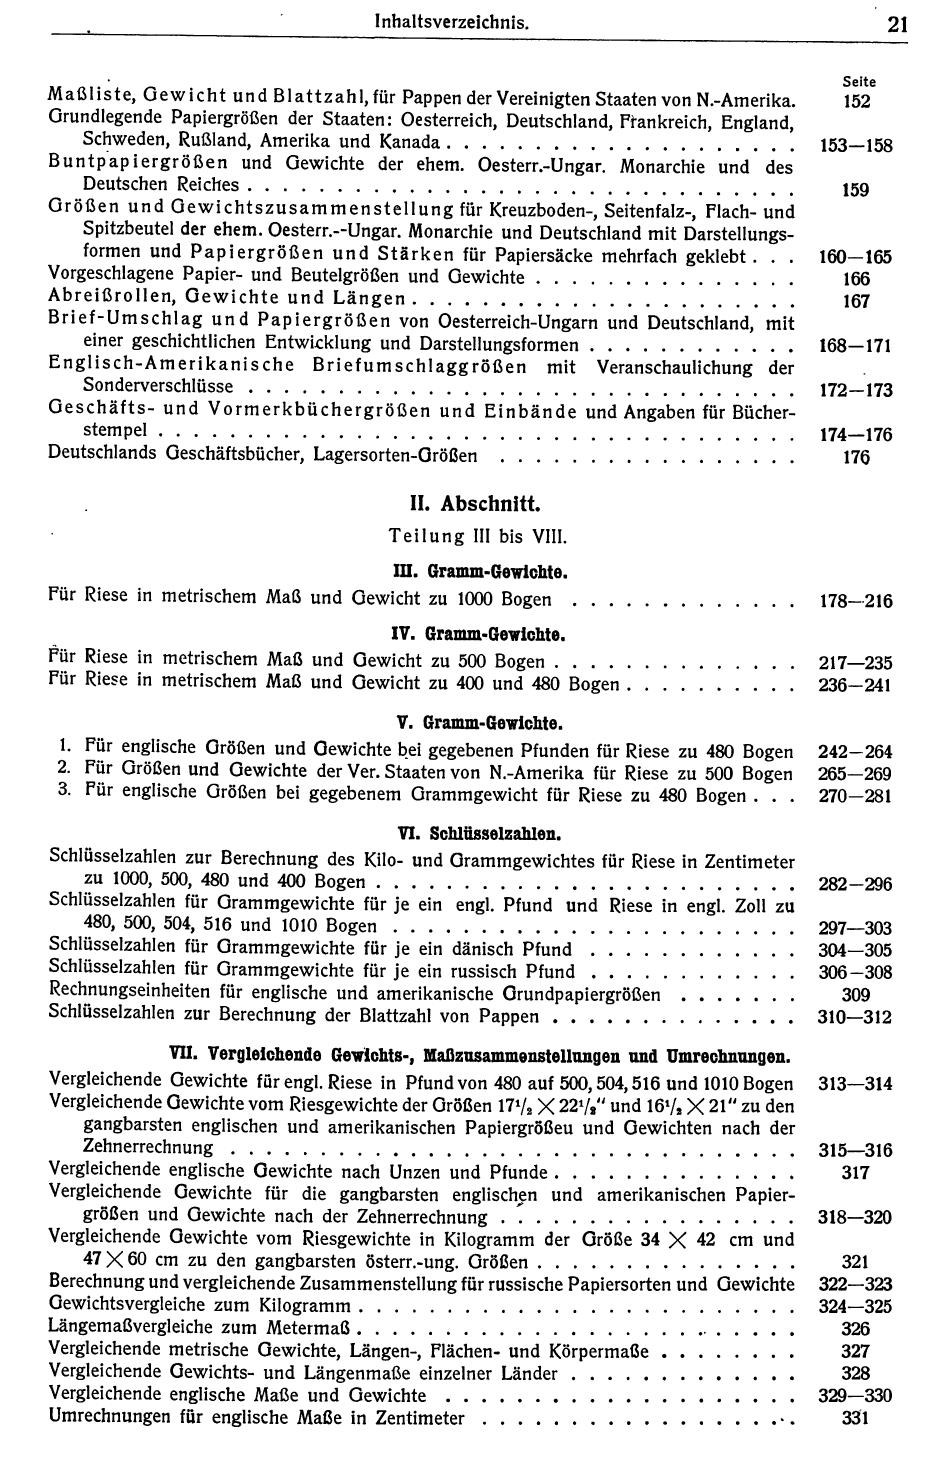 Papierindustrielles Handbuch 1921 - Seite 25